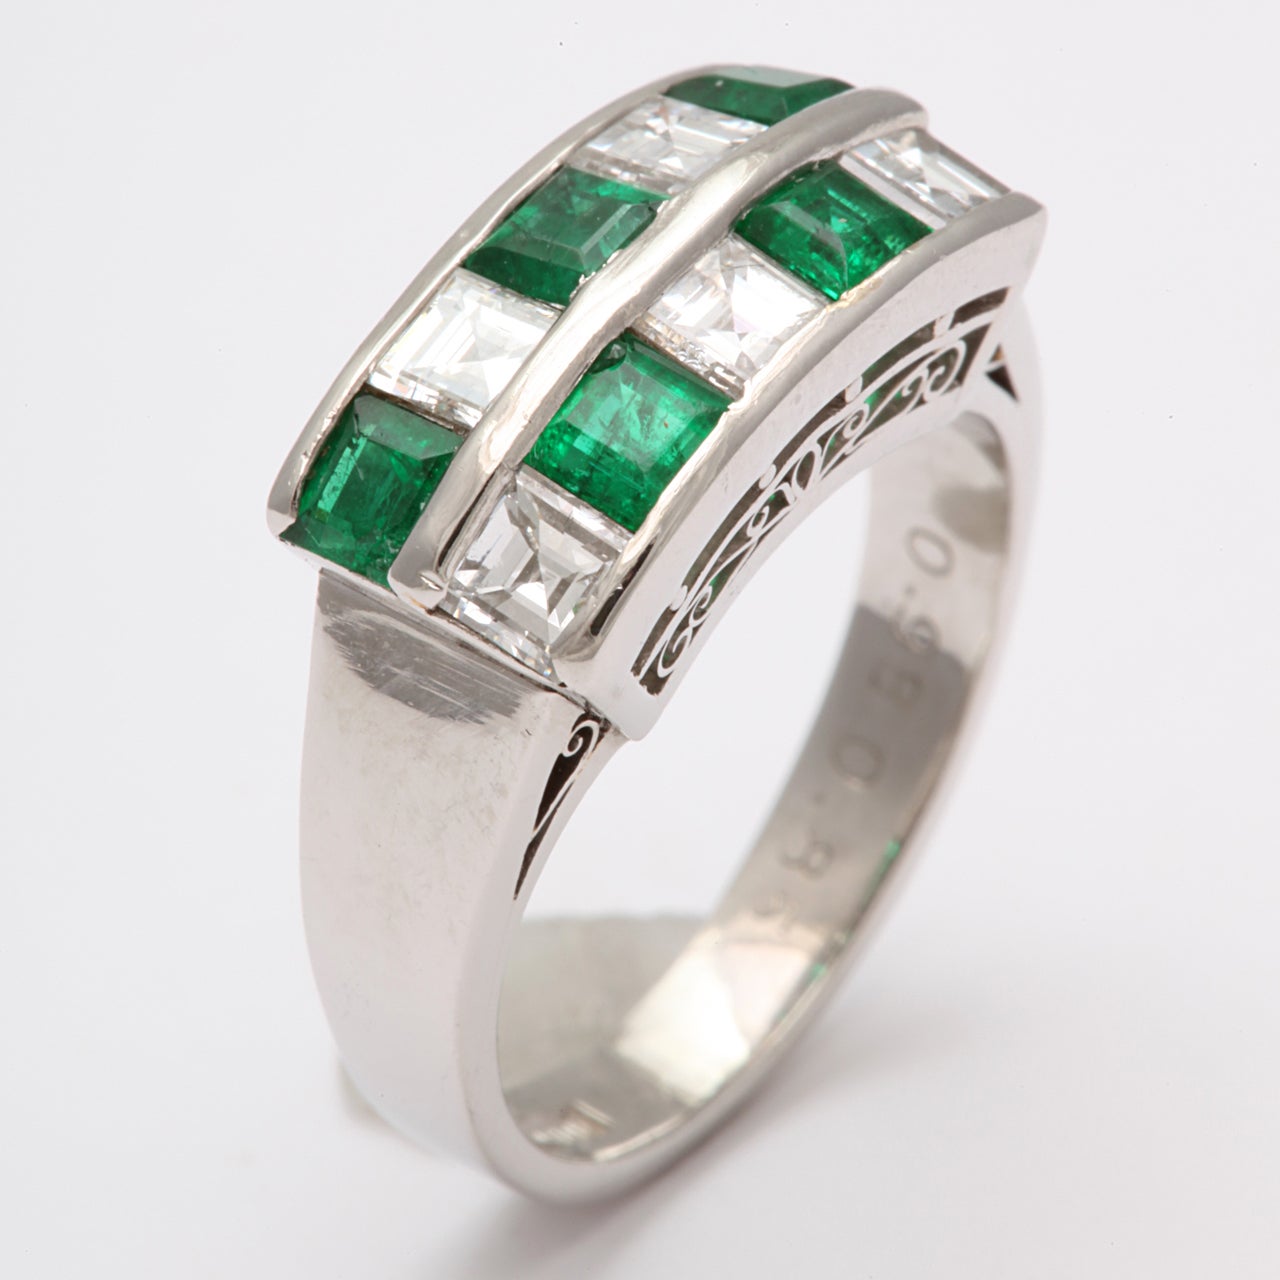 Abwechselnd Smaragd & Diamant Schachbrett Ring mit breitem Schaft montiert auf einem aufwendigen Openwork Galerie.  Gravierte Steine  in der Band in Bezug auf die Größe. Smaragde 95pts. Diamanten 85 Punkte.  Beschriftet 18ct